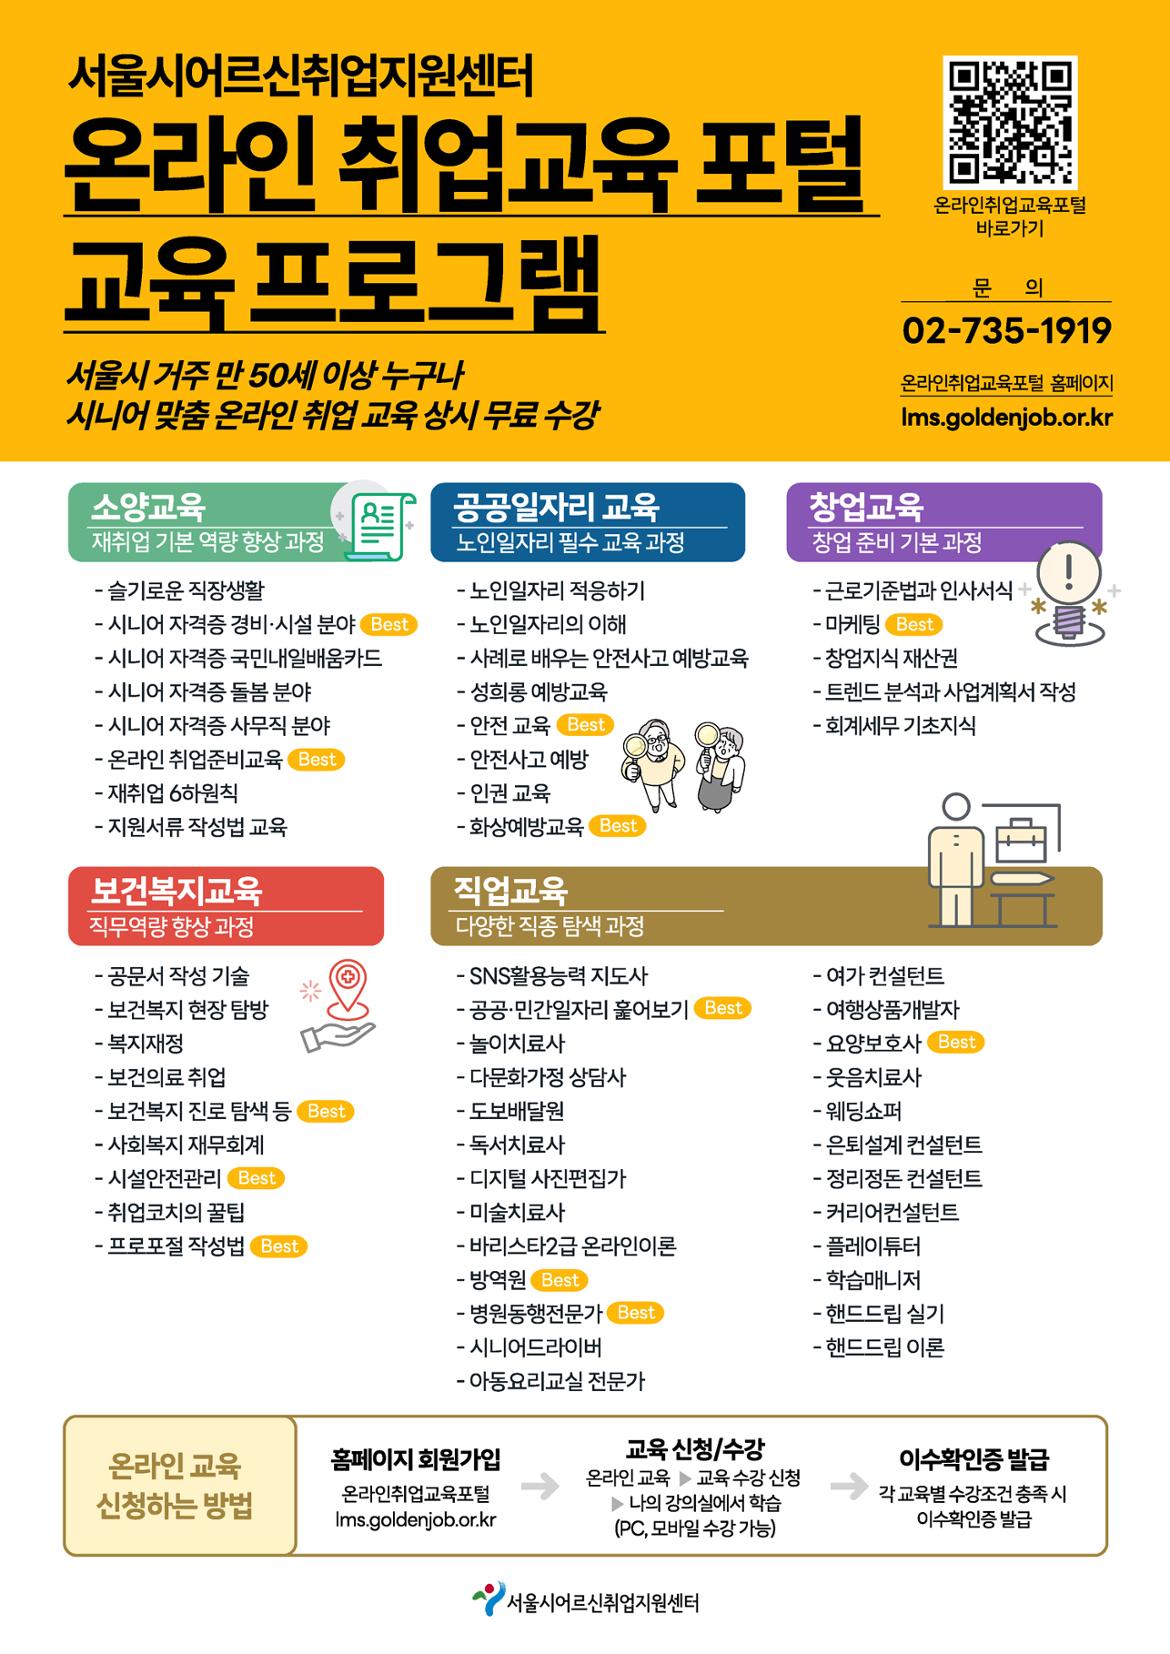 서울시어르신취업지원센터-4월-취업교육-안내-2.jpg